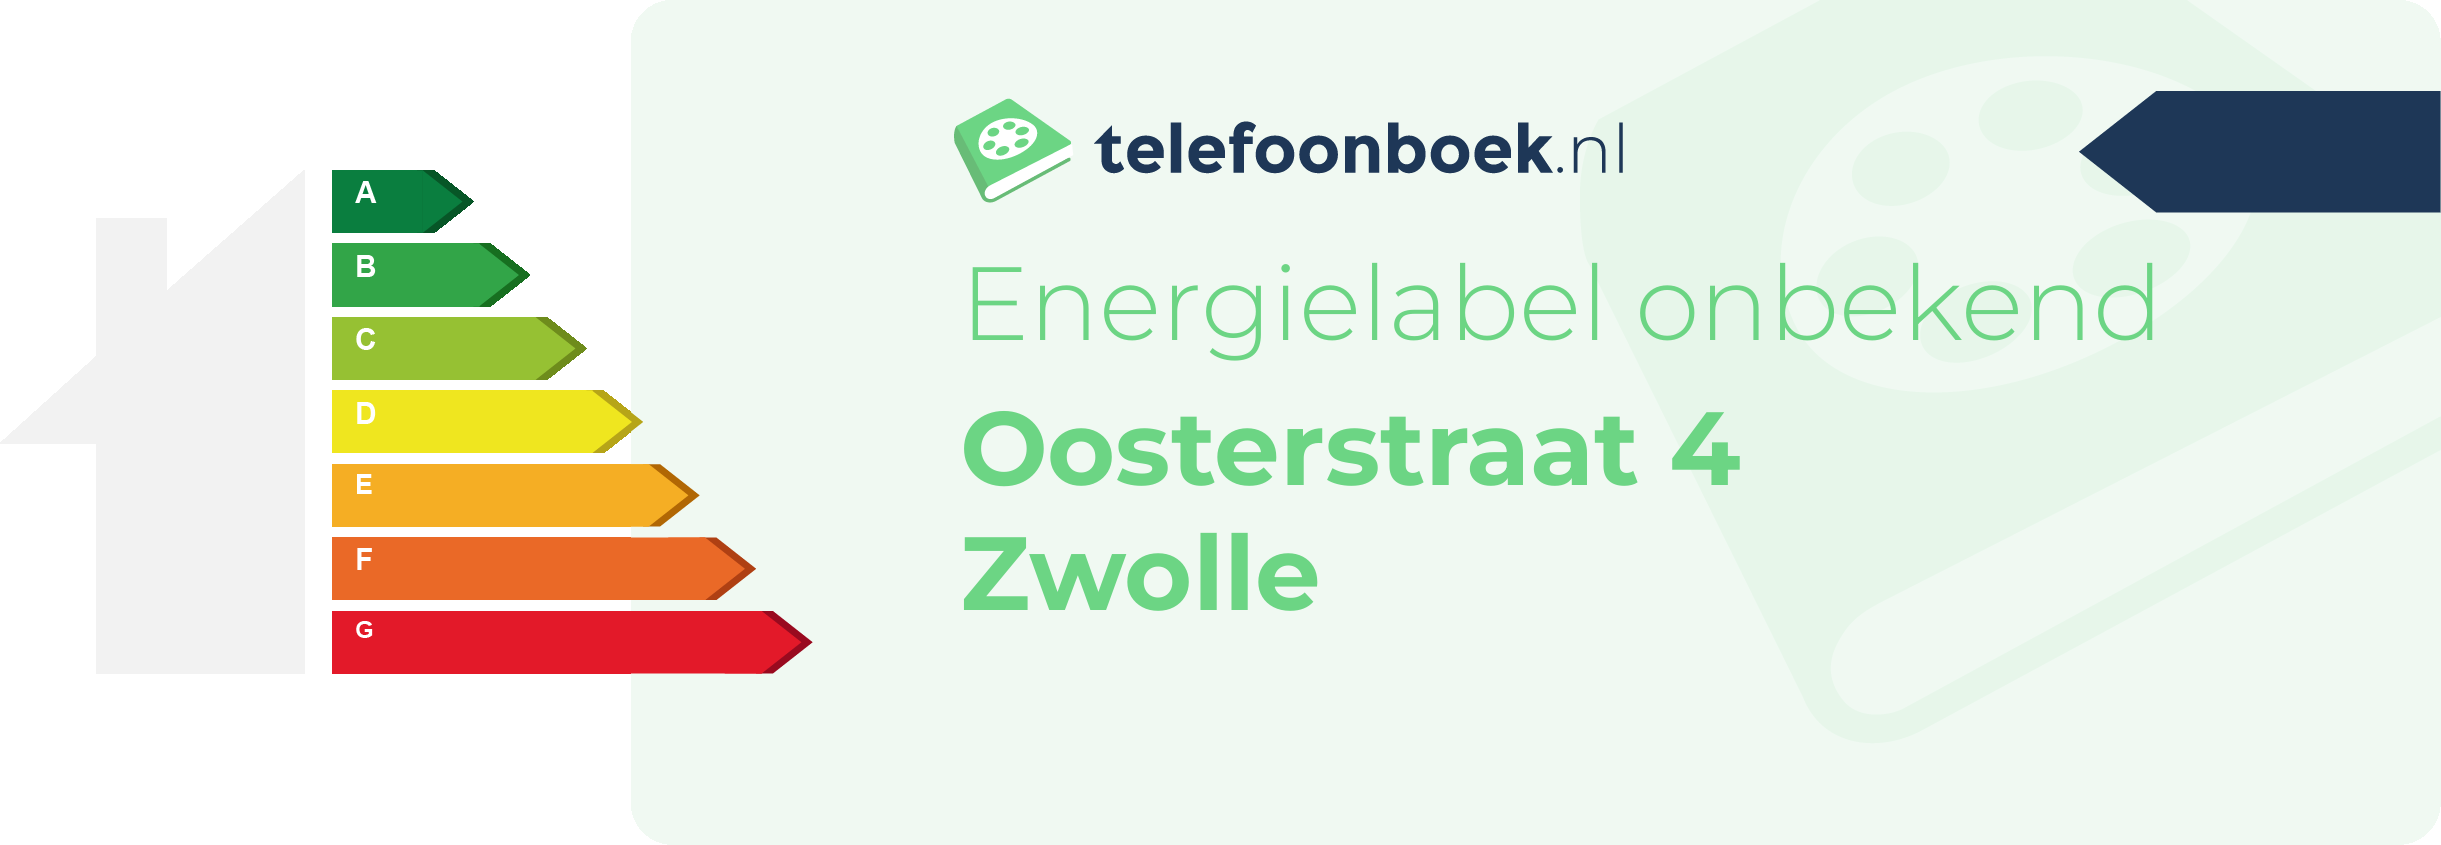 Energielabel Oosterstraat 4 Zwolle